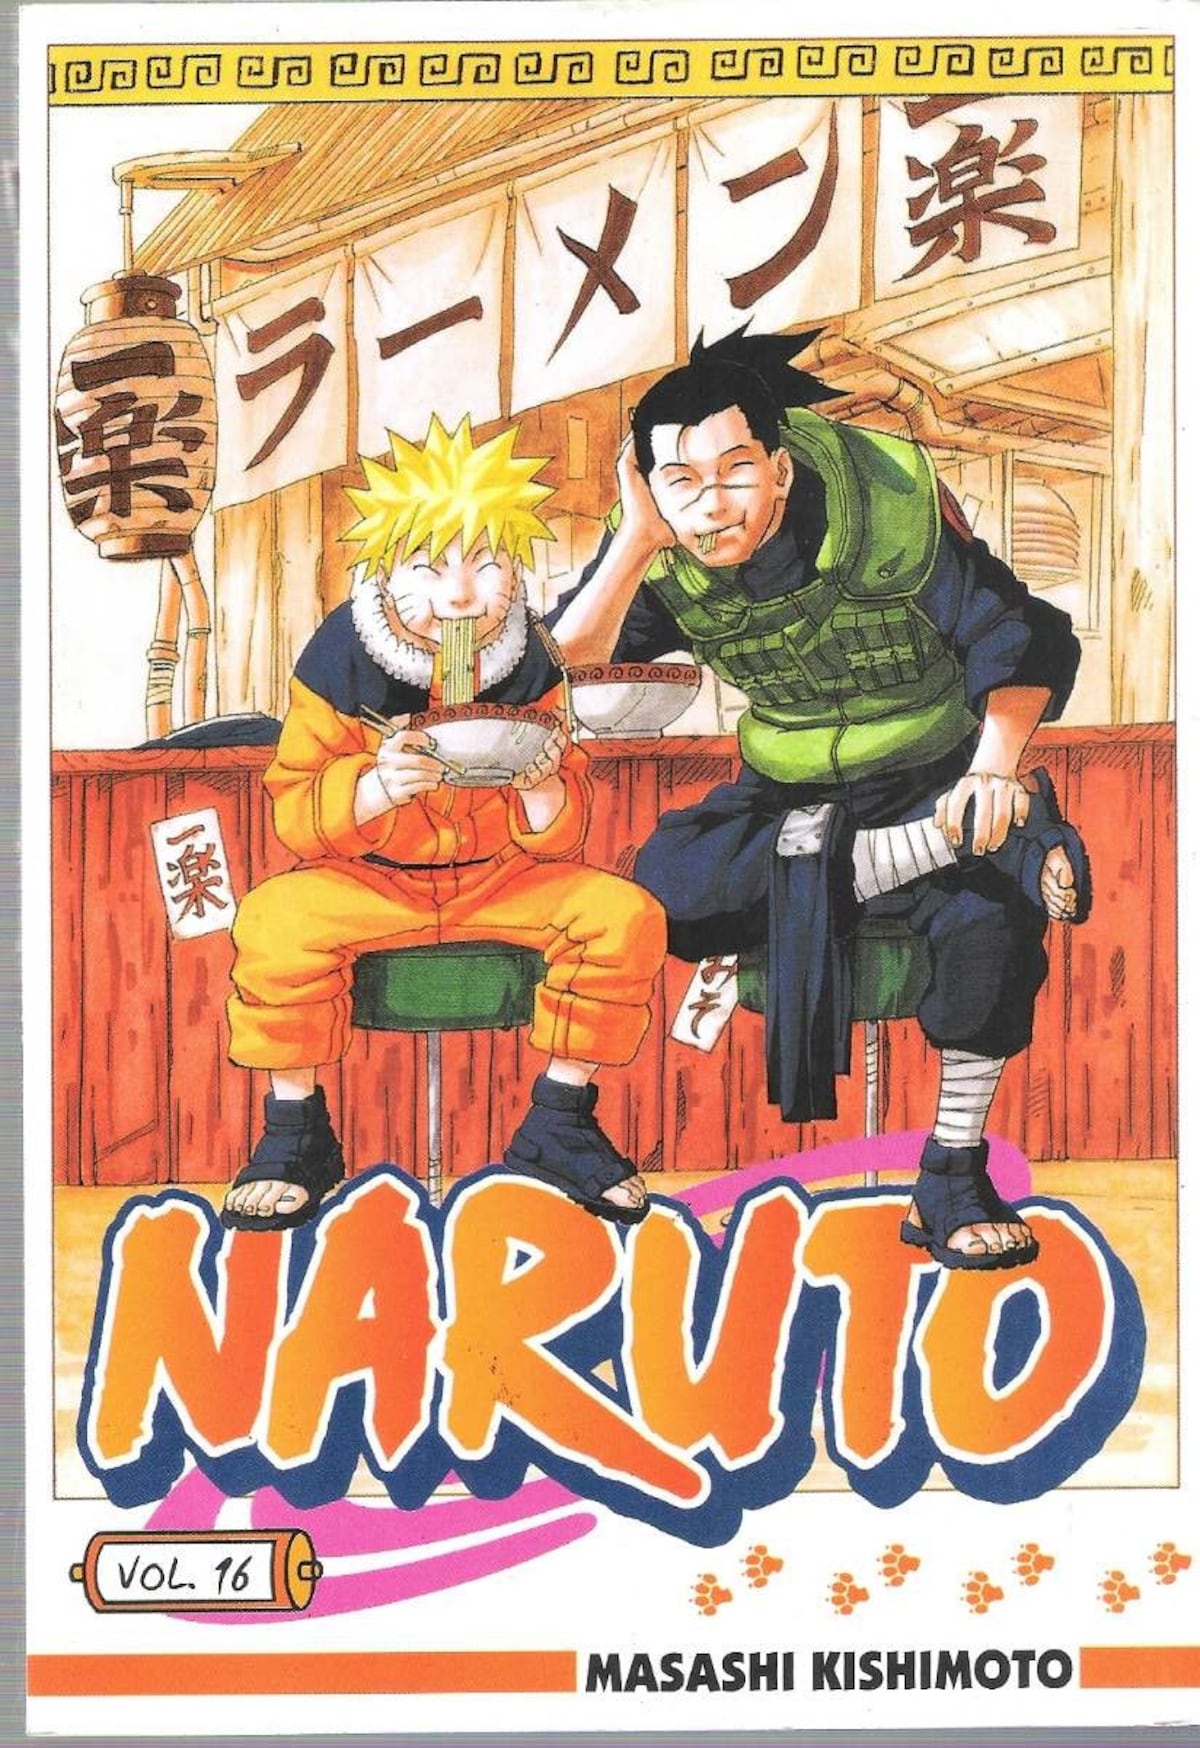 Eat Naruto's Top Ramen at the Real Ichiraku! | All About Japan